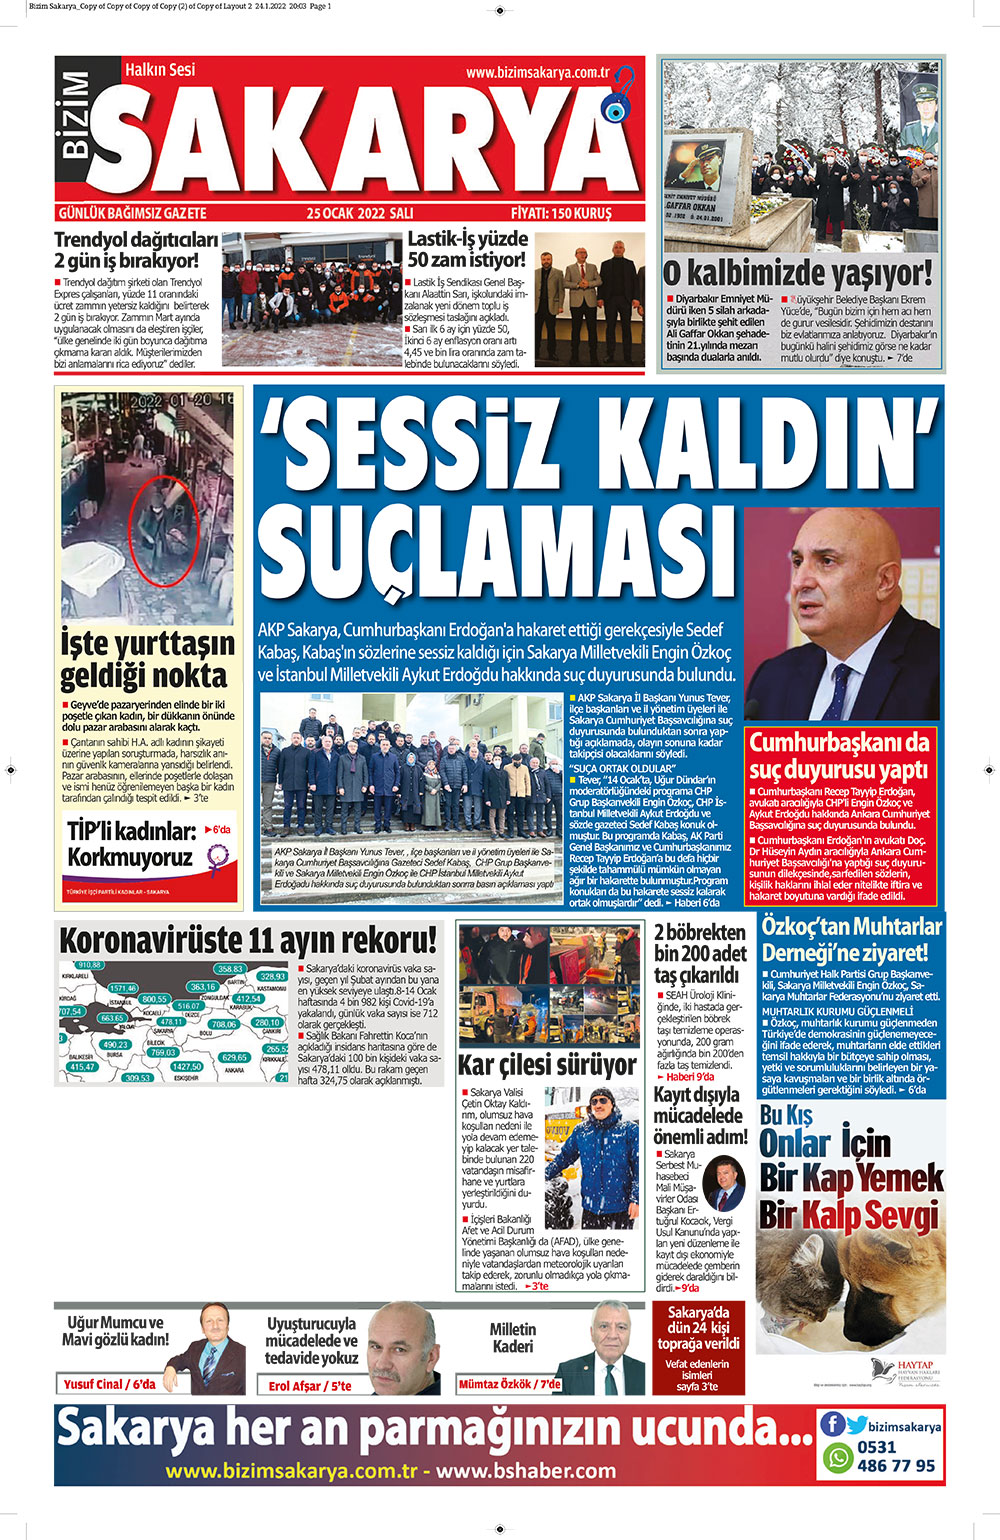 Bizim Sakarya Gazetesi - 25.01.2022 Manşeti